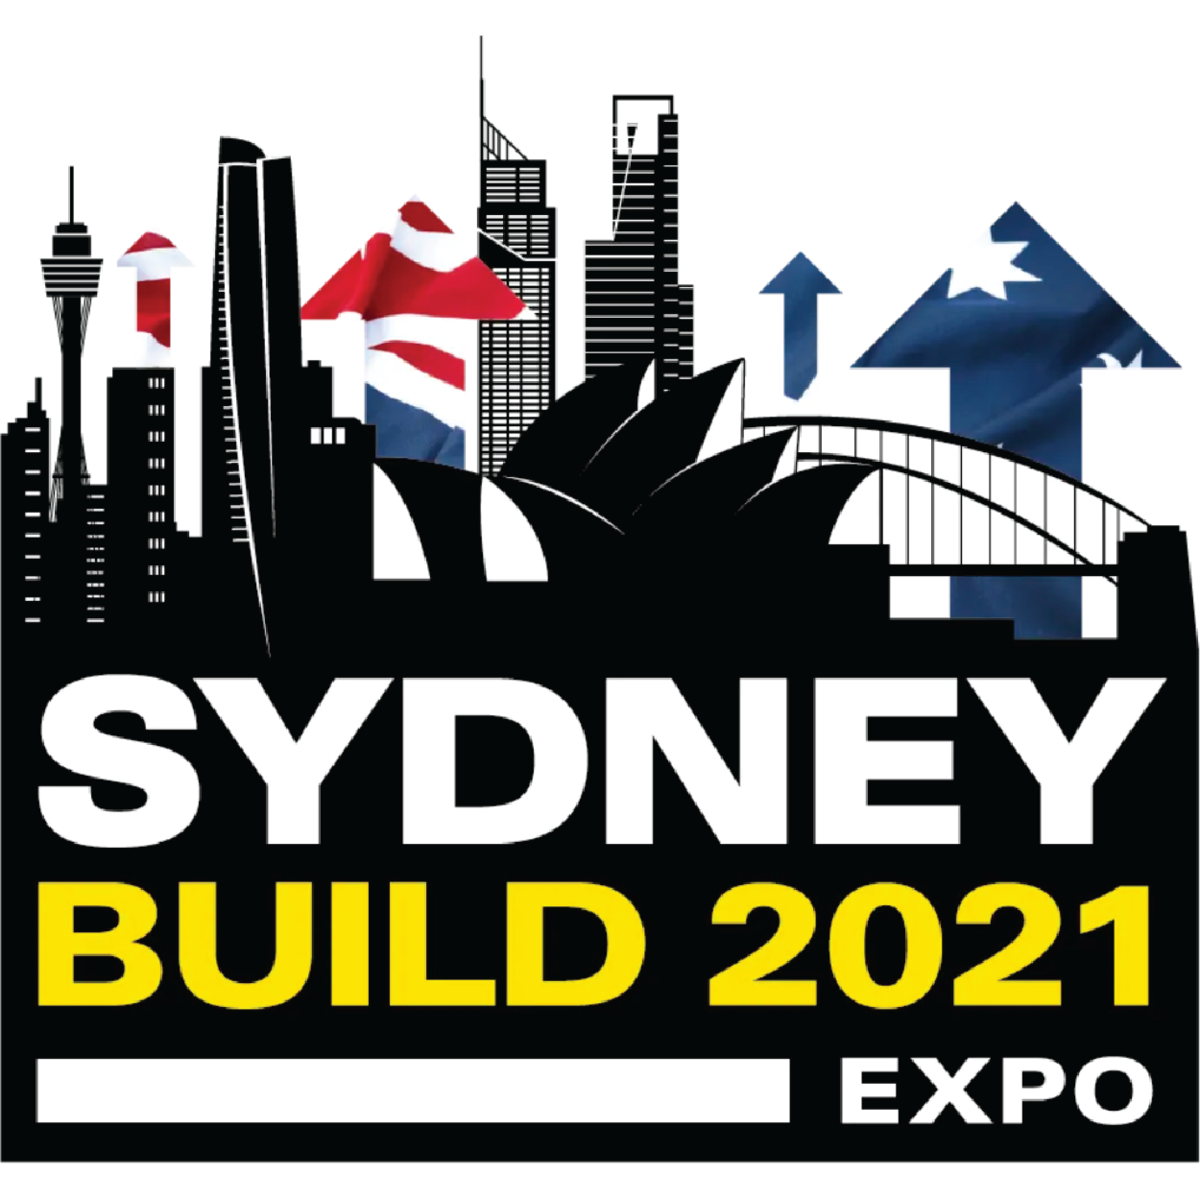 Sydney Build 2021 Expo